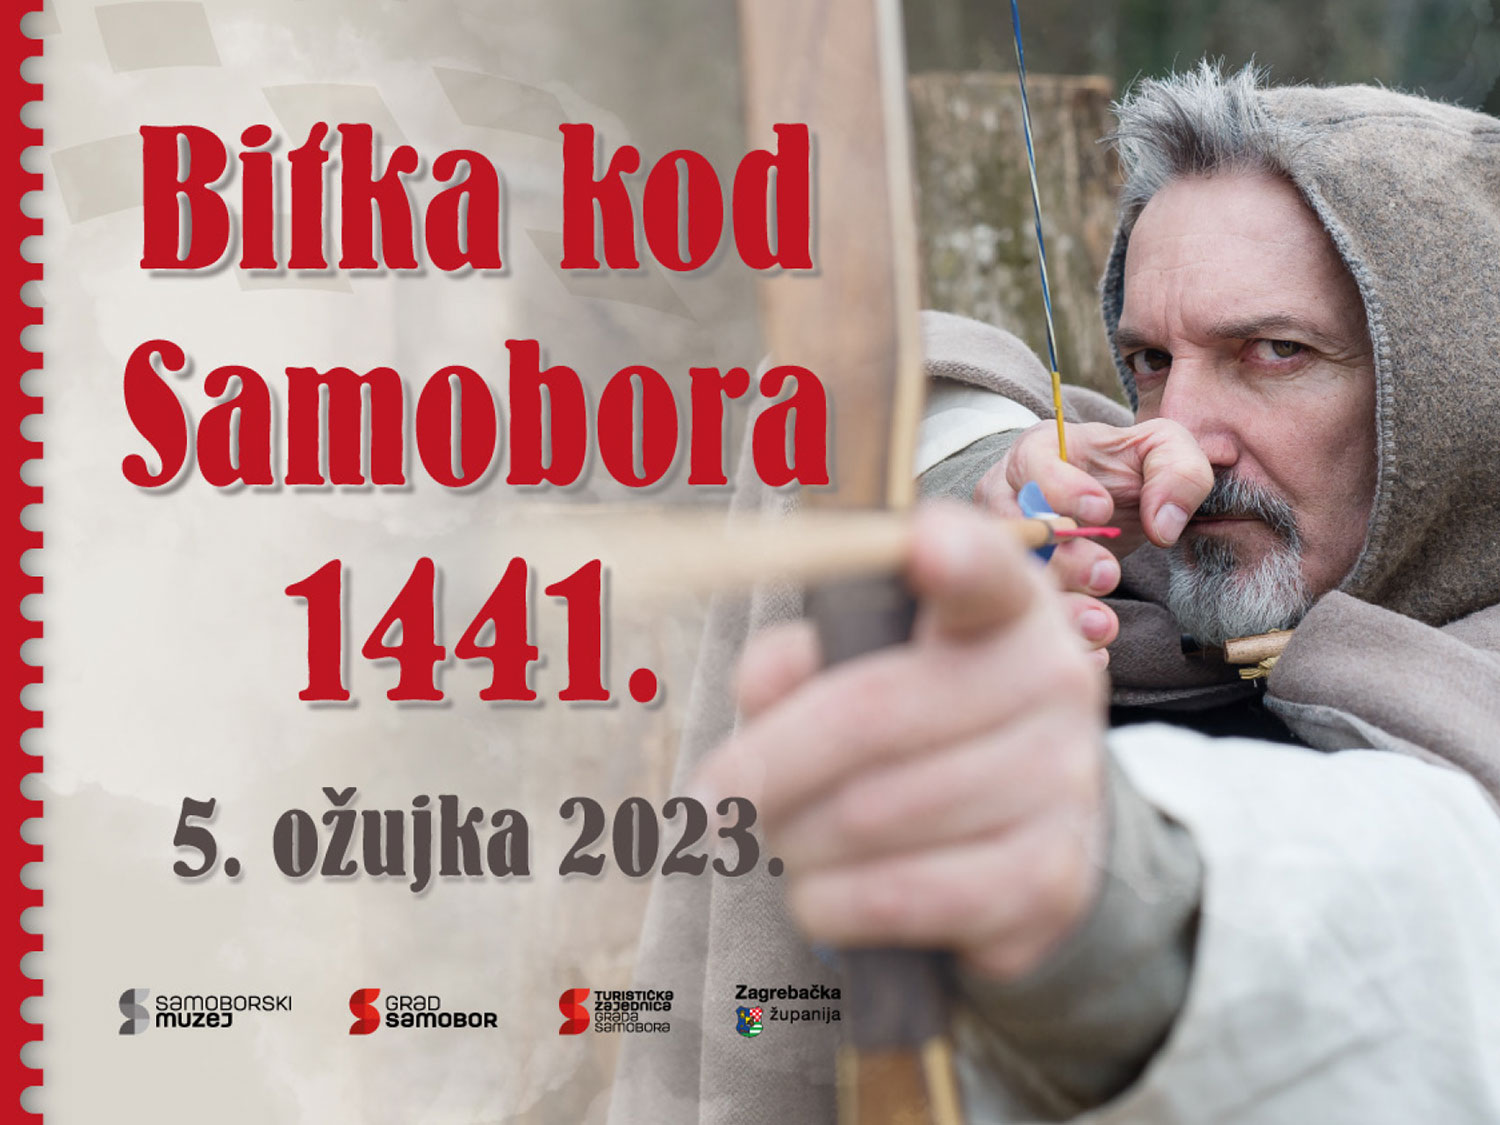 18. uprizorenje Bitke kod Samobora 1441.